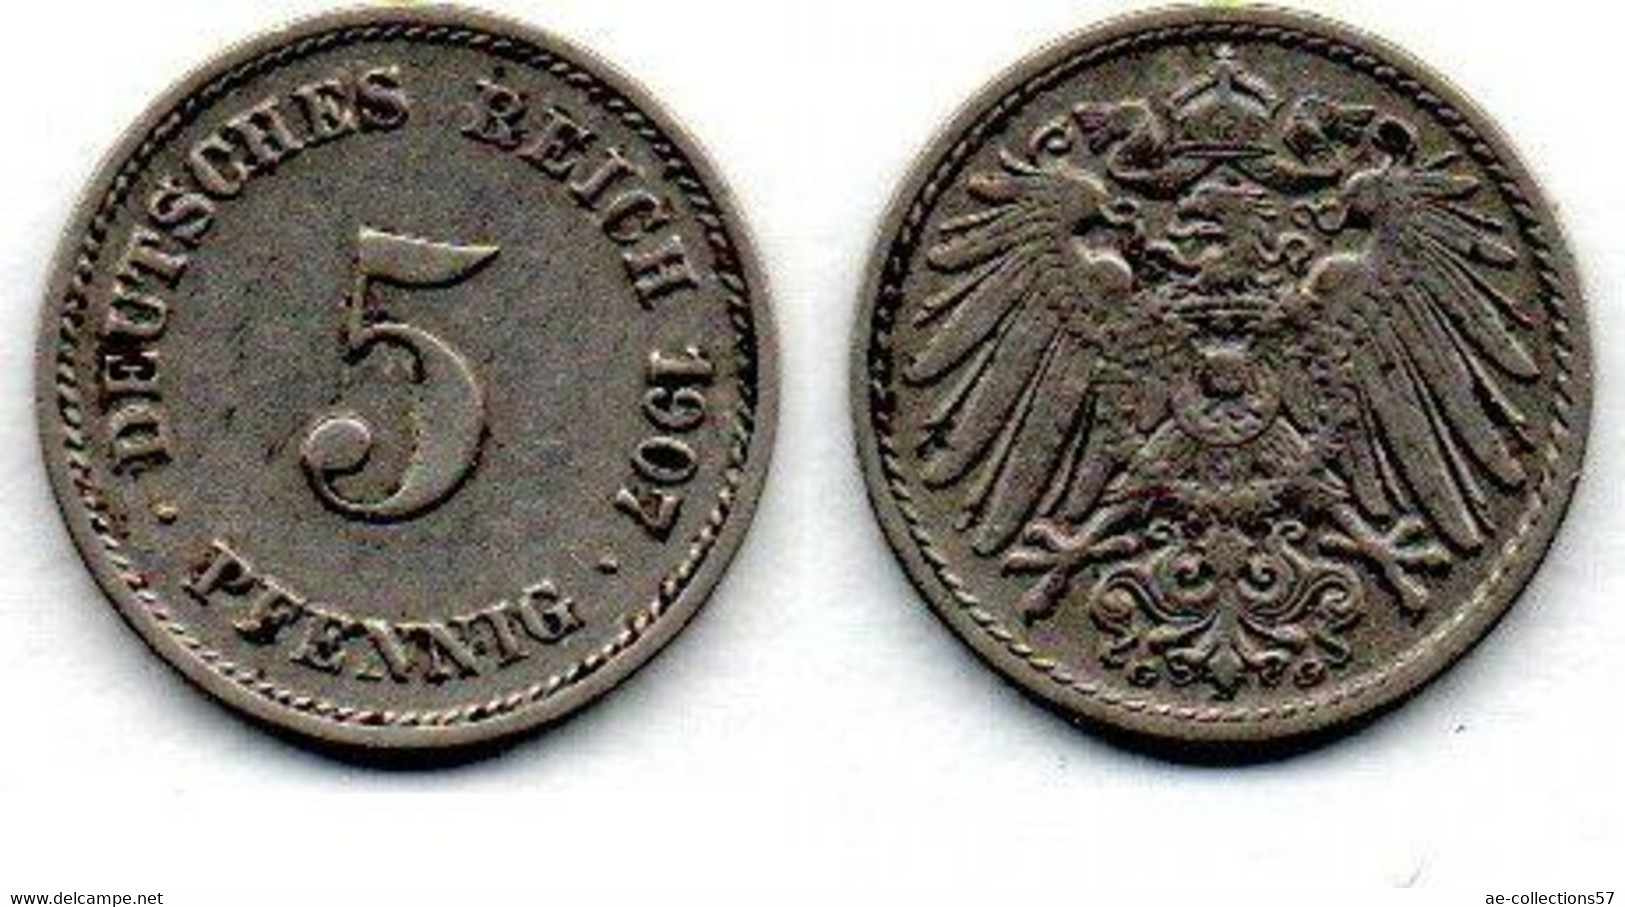 Allemagne - 5 Pfennig 1907 G TTB - 5 Pfennig